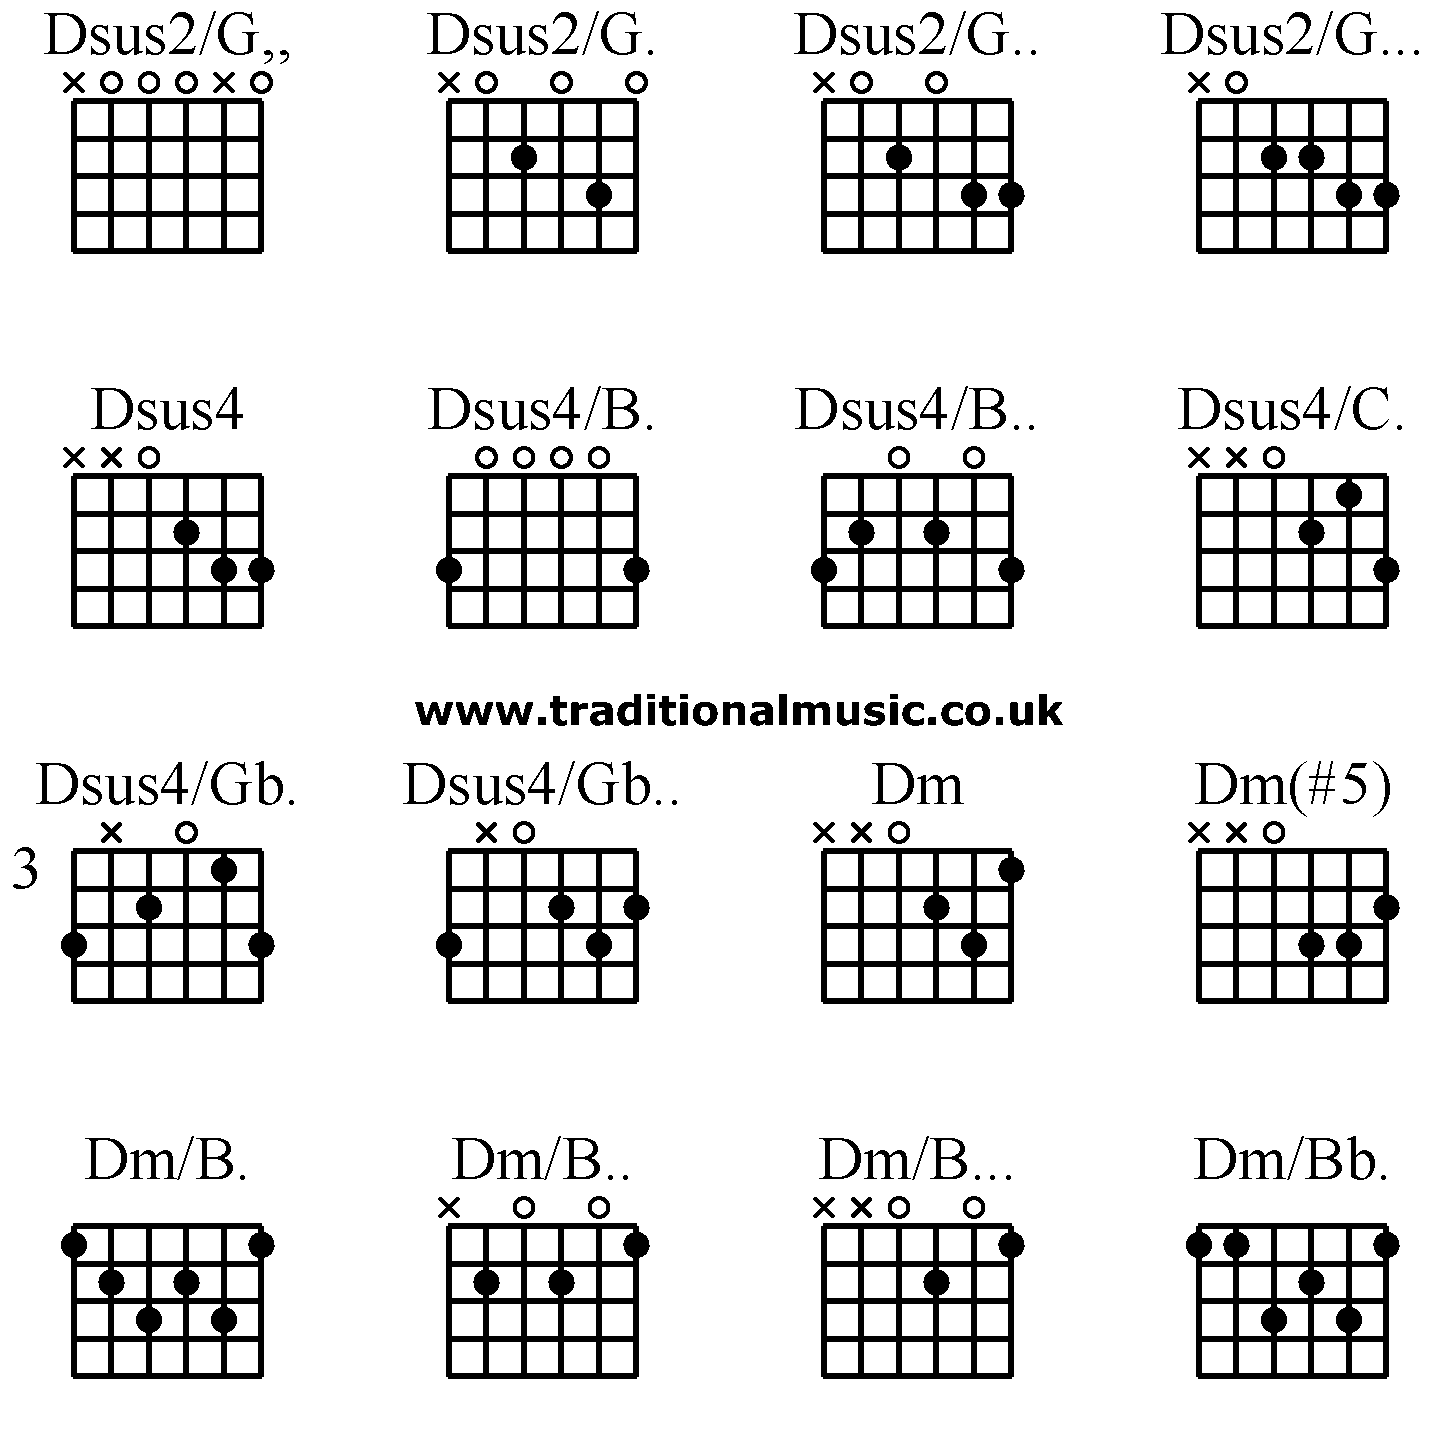 Advanced guitar chords:Dsus2/G,, Dsus2/G. Dsus2/G.. Dsus2/G... Dsus4 Dsus4/B. Dsus4/B.. Dsus4/C. Dsus4/Gb. Dsus4/Gb.. Dm Dm(#5) Dm/B. Dm/B.. Dm/B... Dm/Bb.